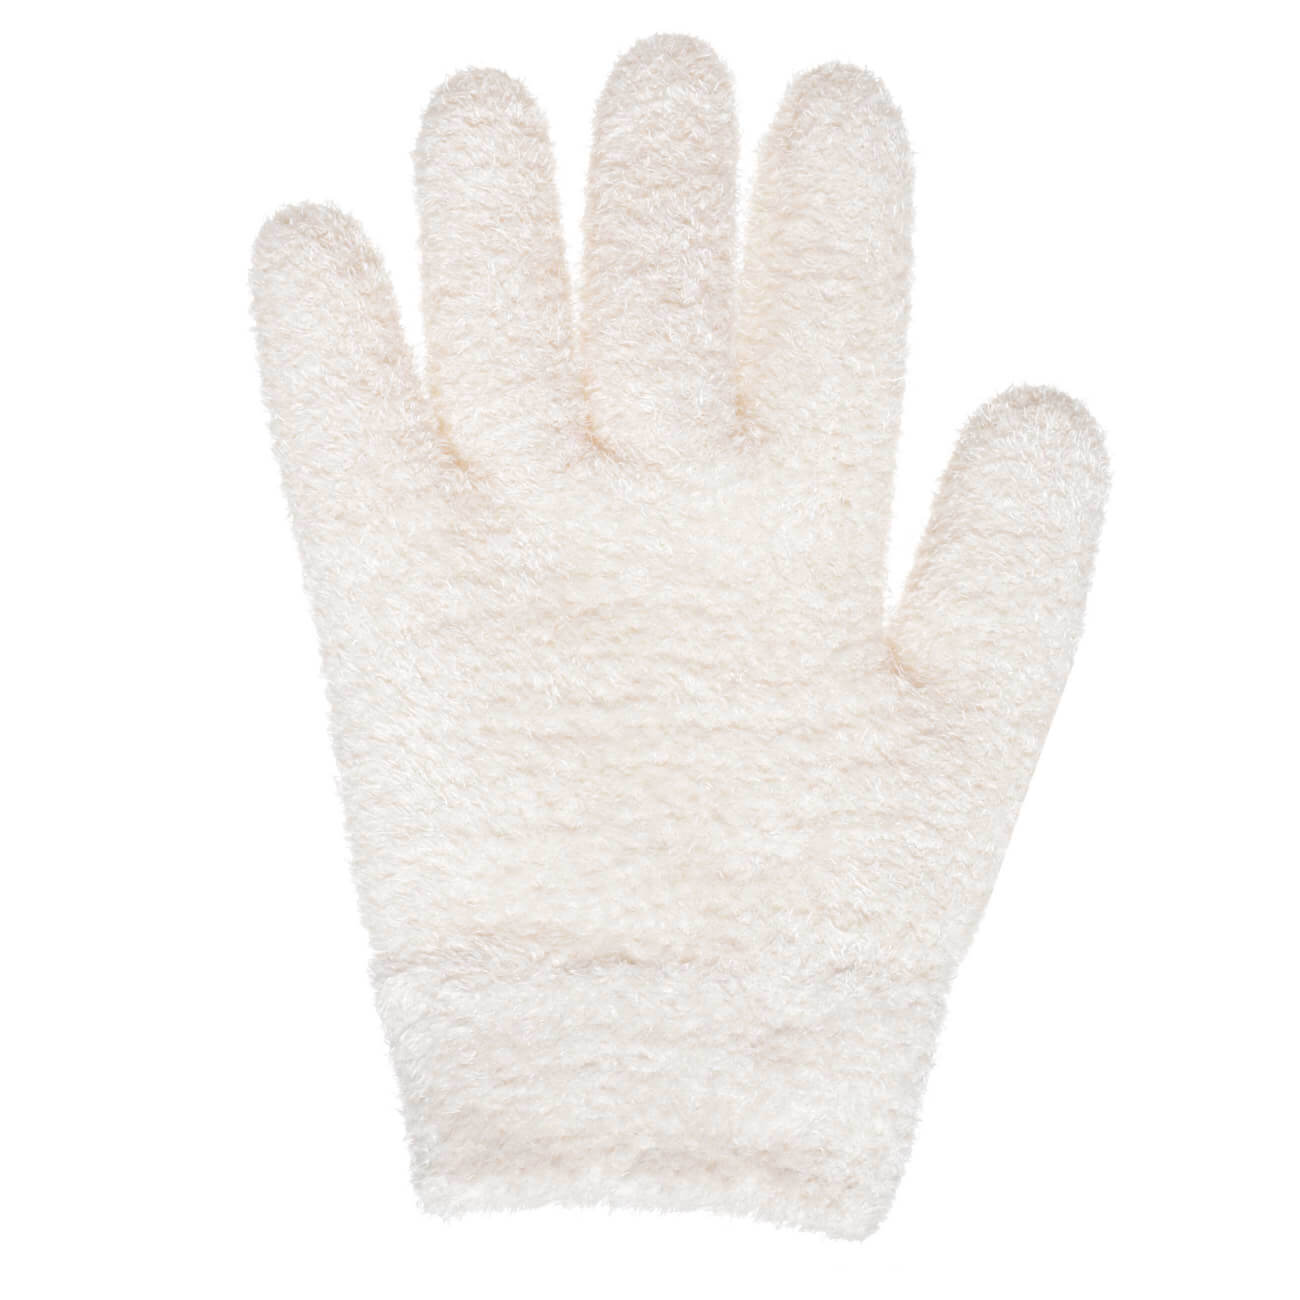 СПА-перчатки гелевые, 20 см, многоразовые, полиэстер, молочные, Spa полустельки гелевые olvist